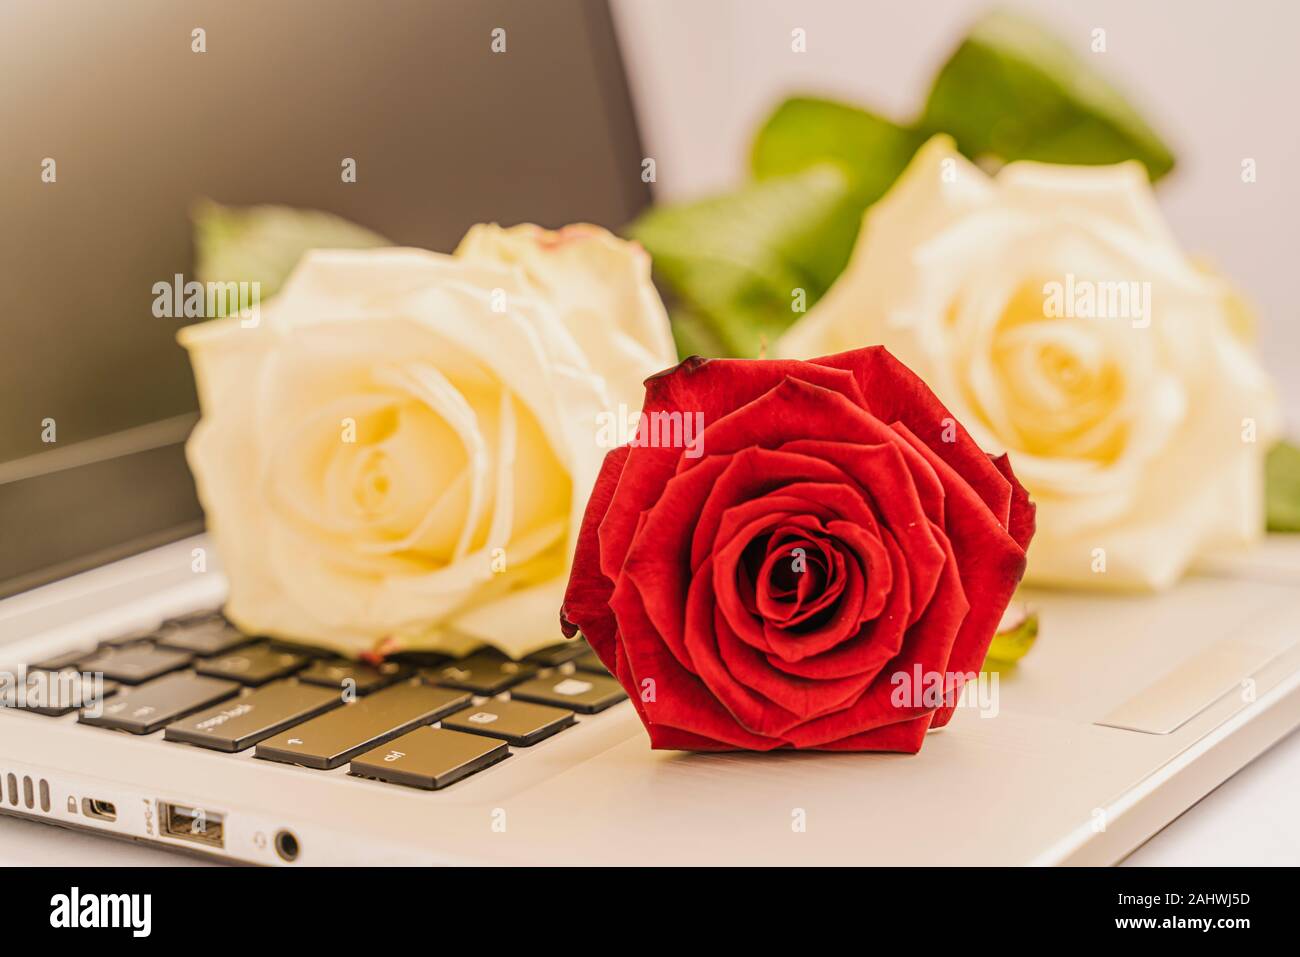 Blumenstrauß aus frische weiße und rote Rosen auf der Tastatur des Laptops  auf leicht rosa unterlegt, Valentine, Konzept. Ein bisschen Romantik im  Alltag. Horizont Stockfotografie - Alamy